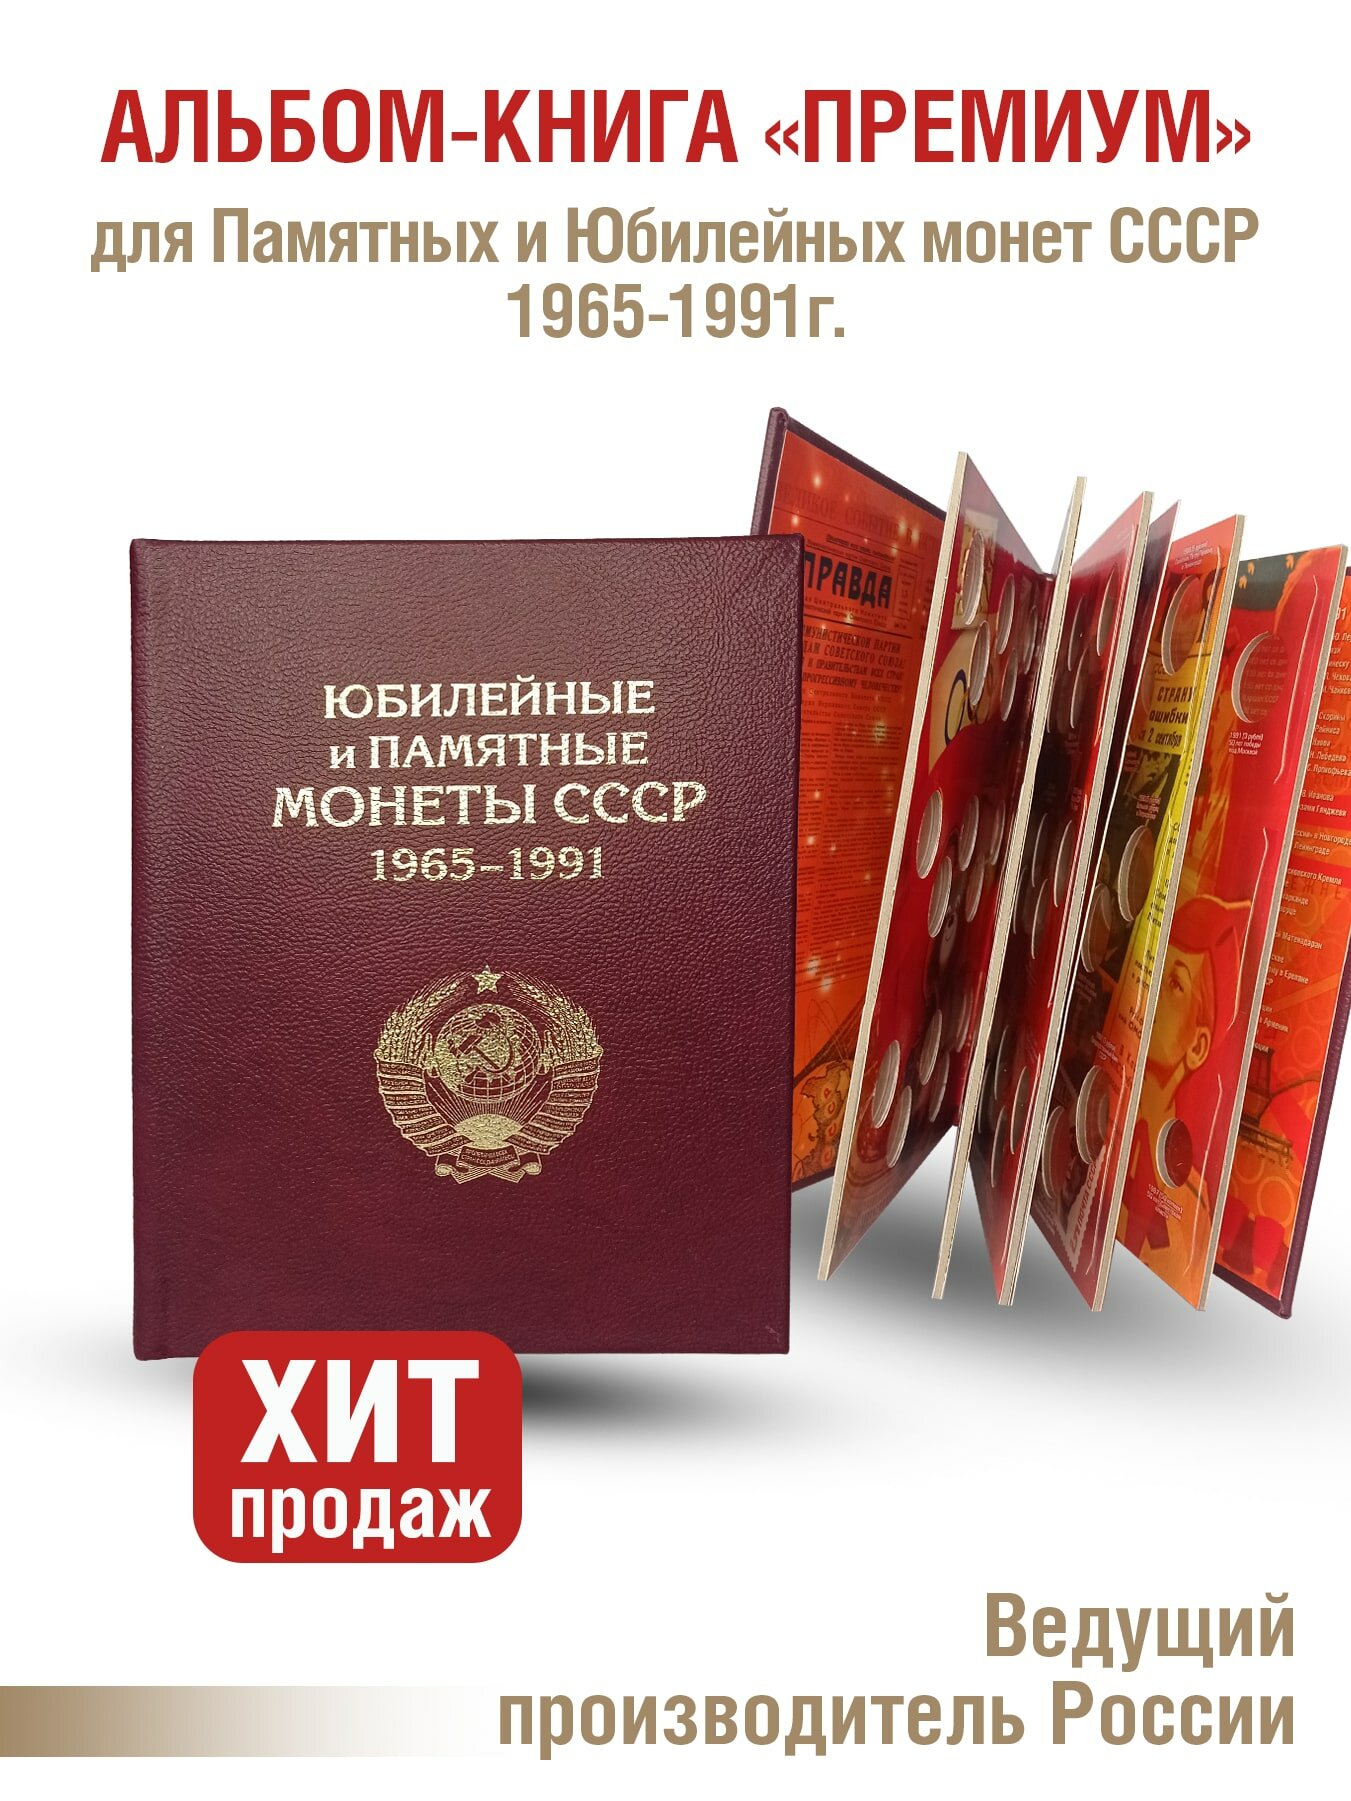 Альбом "премиум" для хранения Памятных и Юбилейных монет СССР 1964-1991г. Цвет бордо.